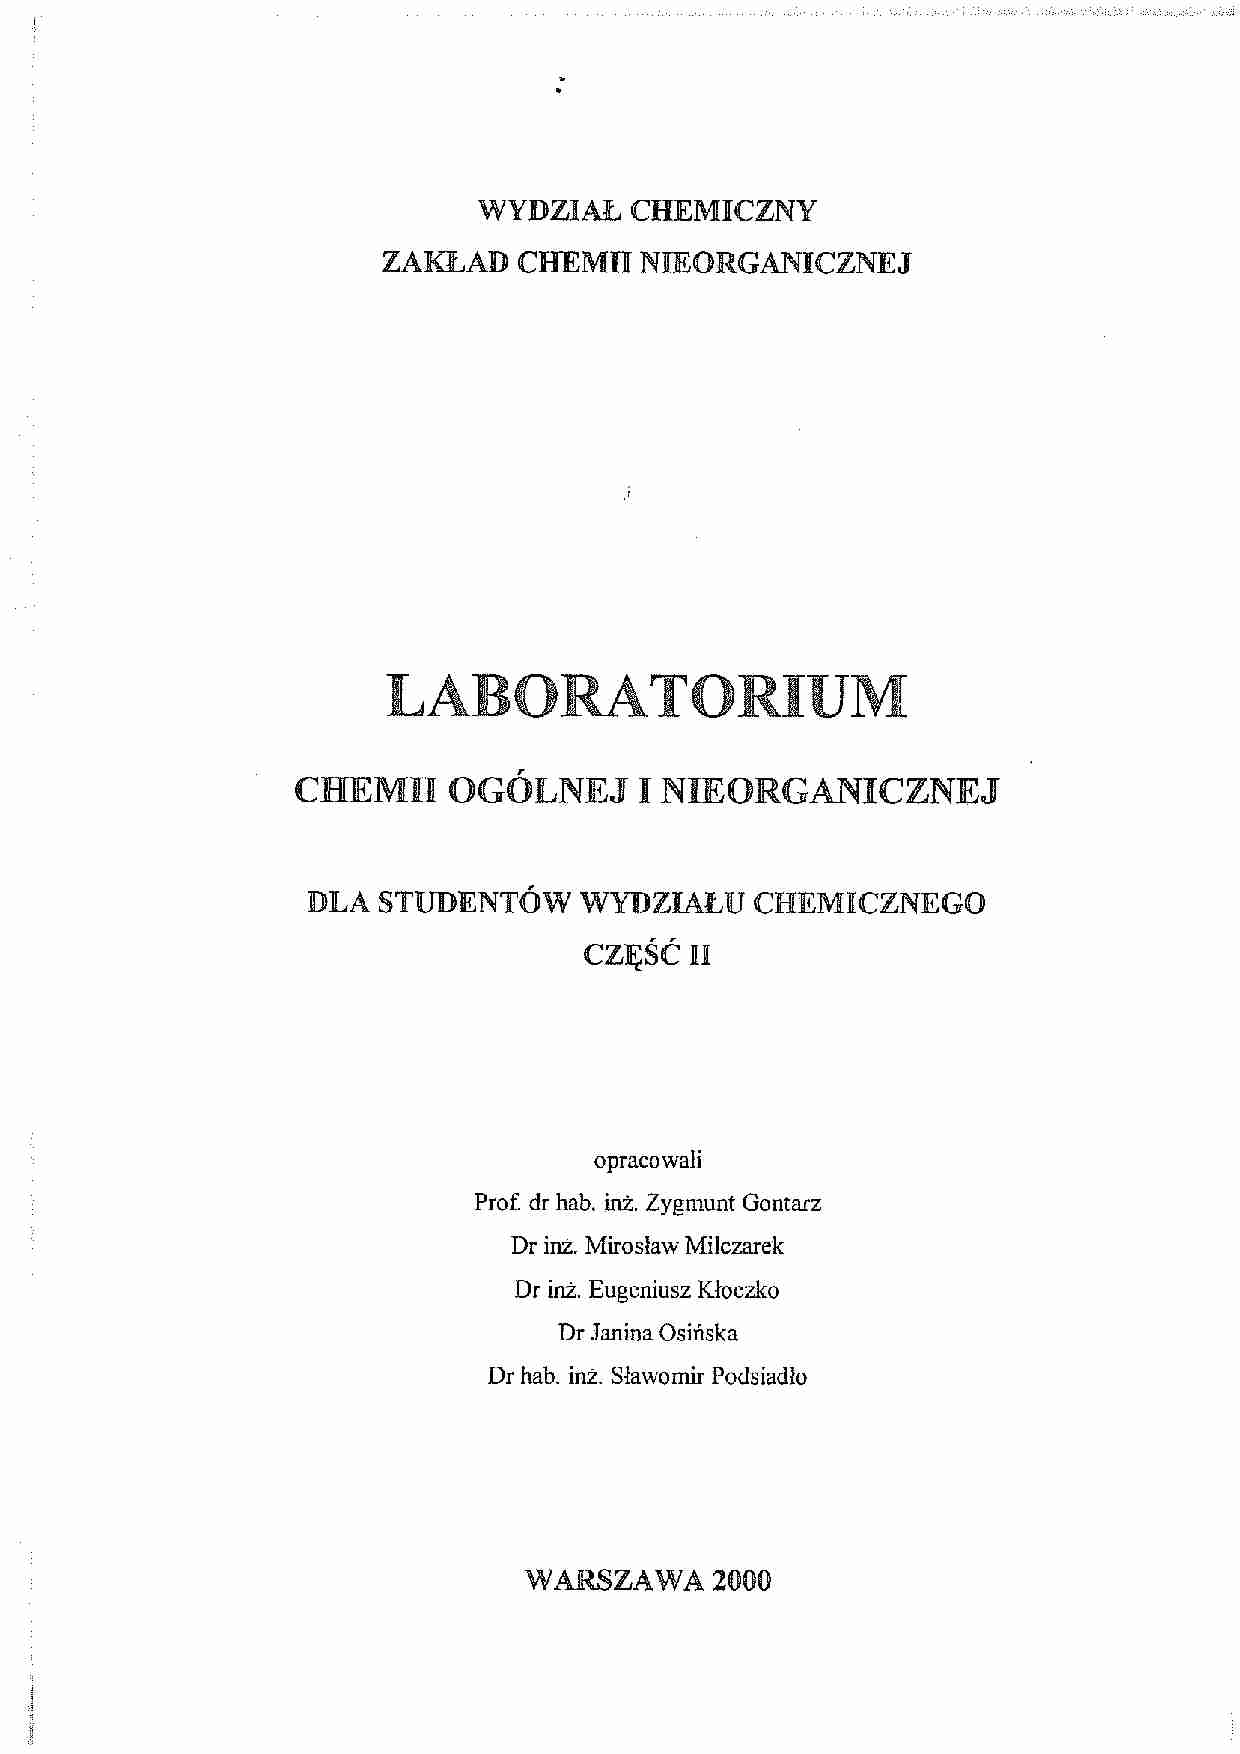 Laboratorium chemii ogólnej i nieorganicznej - skrypt cz. 2 - strona 1